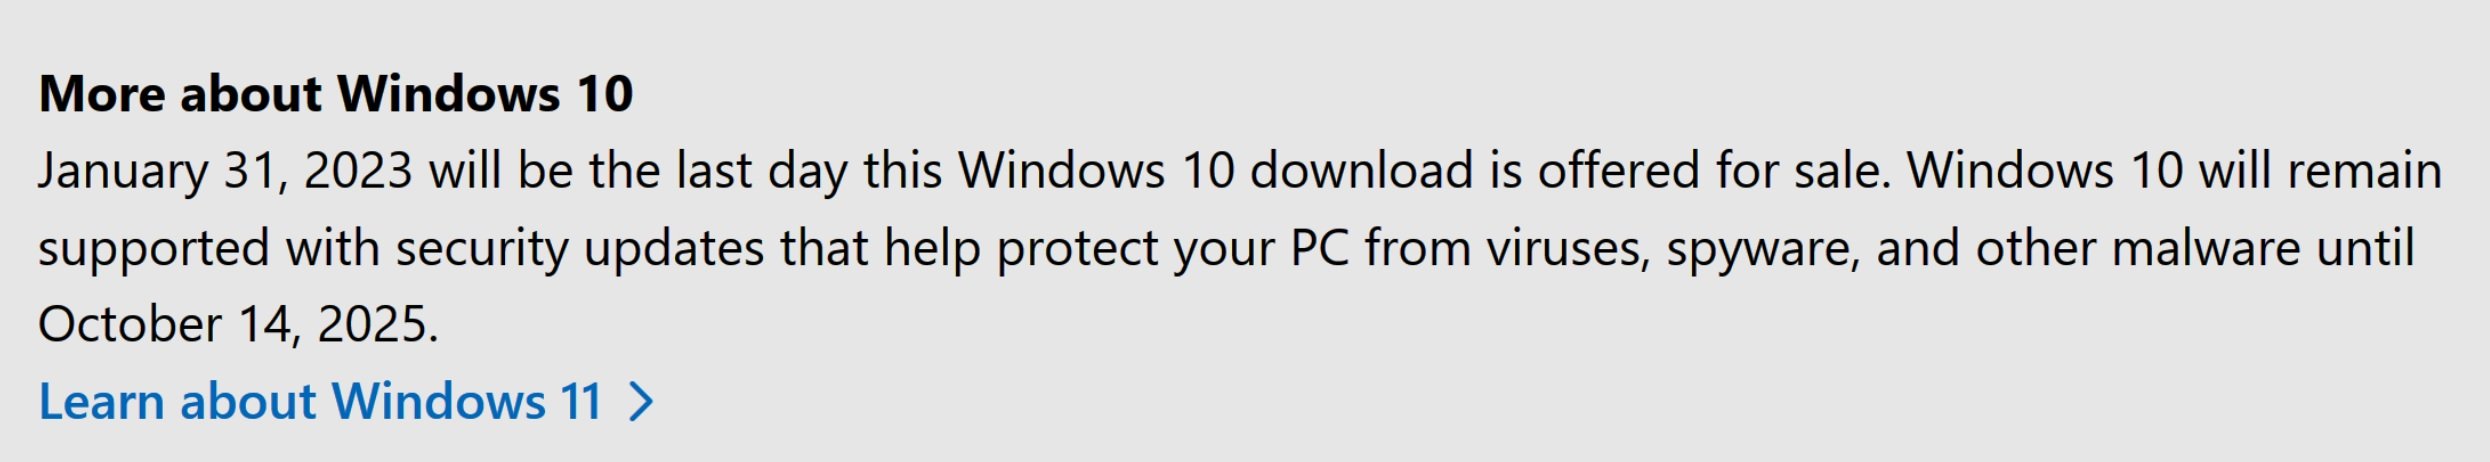 Windows 10 OEM